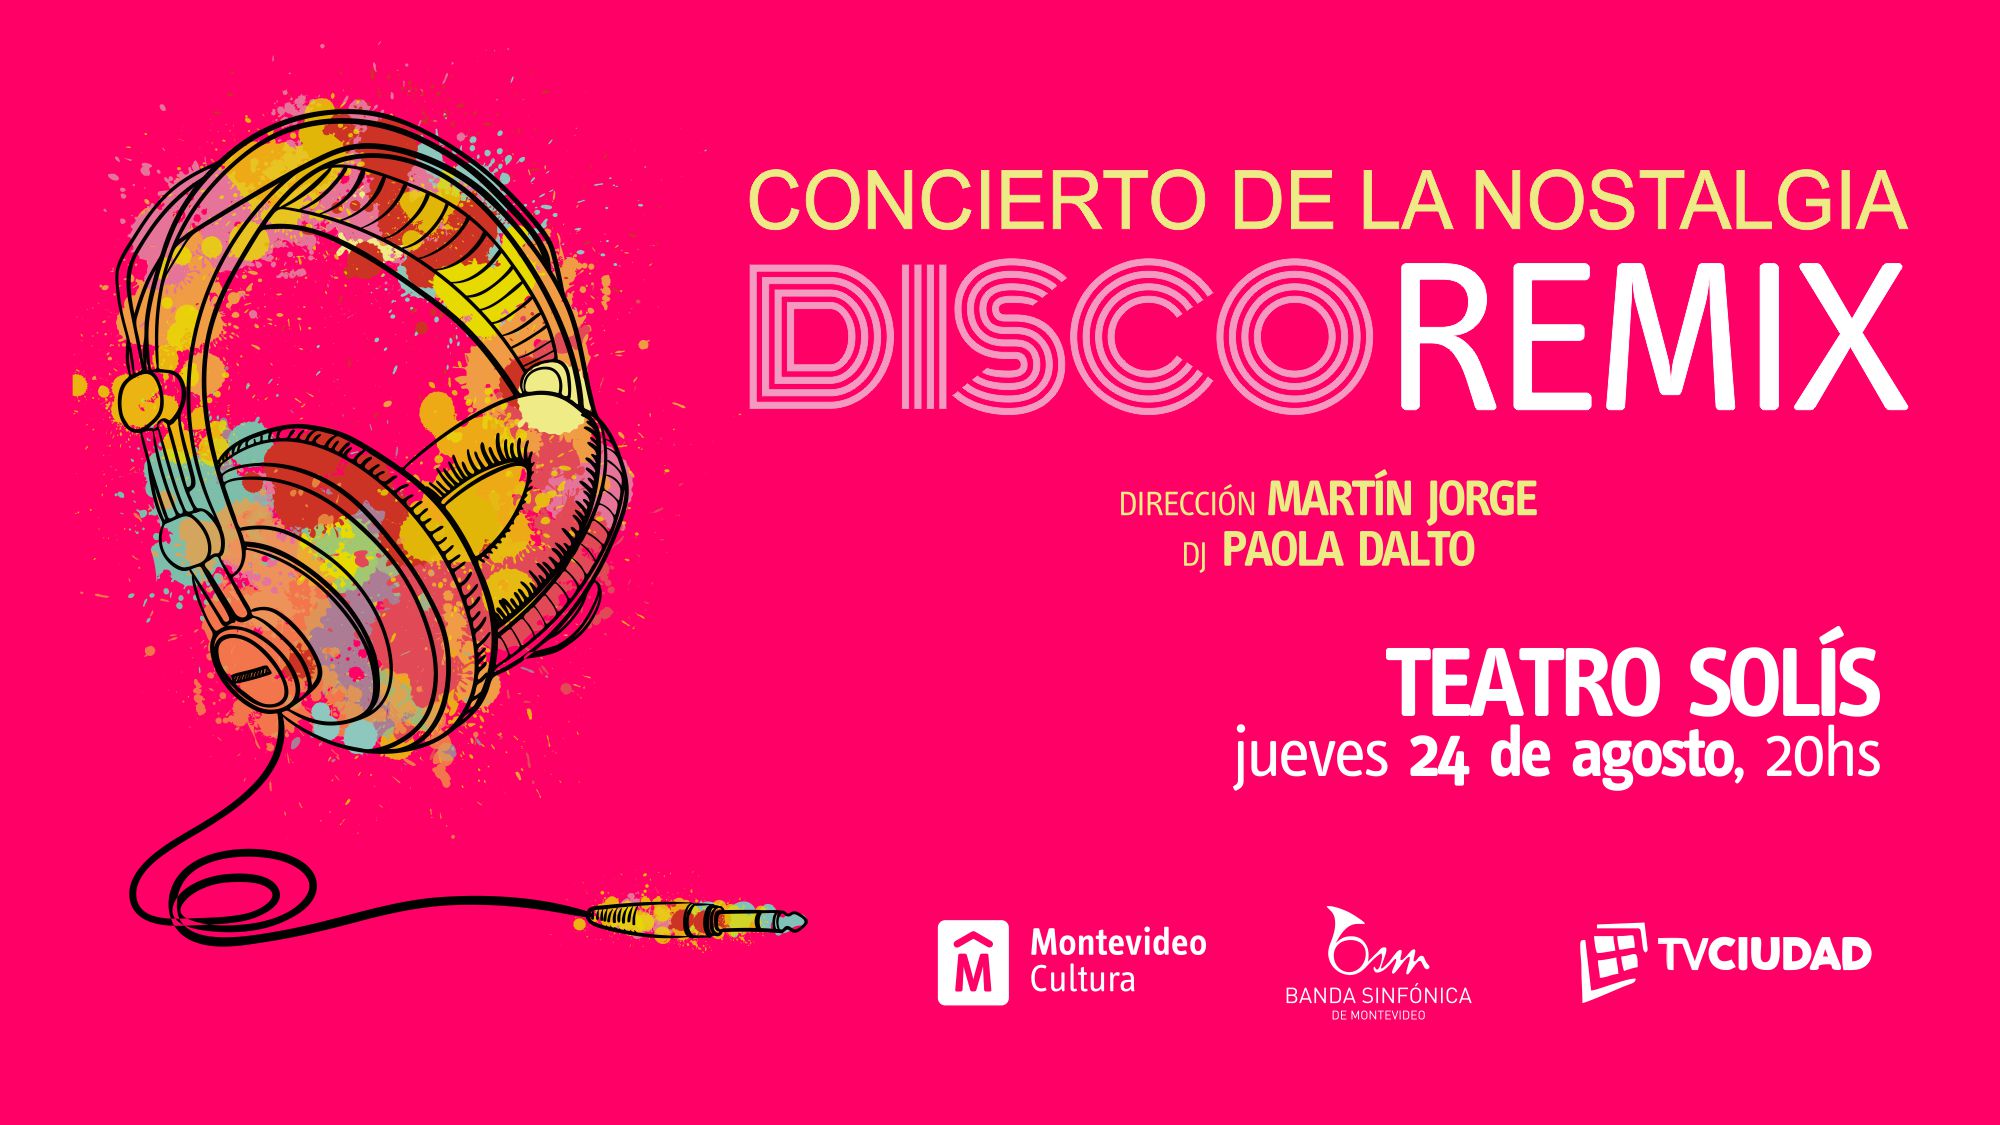 Banda Sinfónica de Montevideo presenta Disco Remix Concierto de la Nostalgia junto a la Dj Paola Dalto